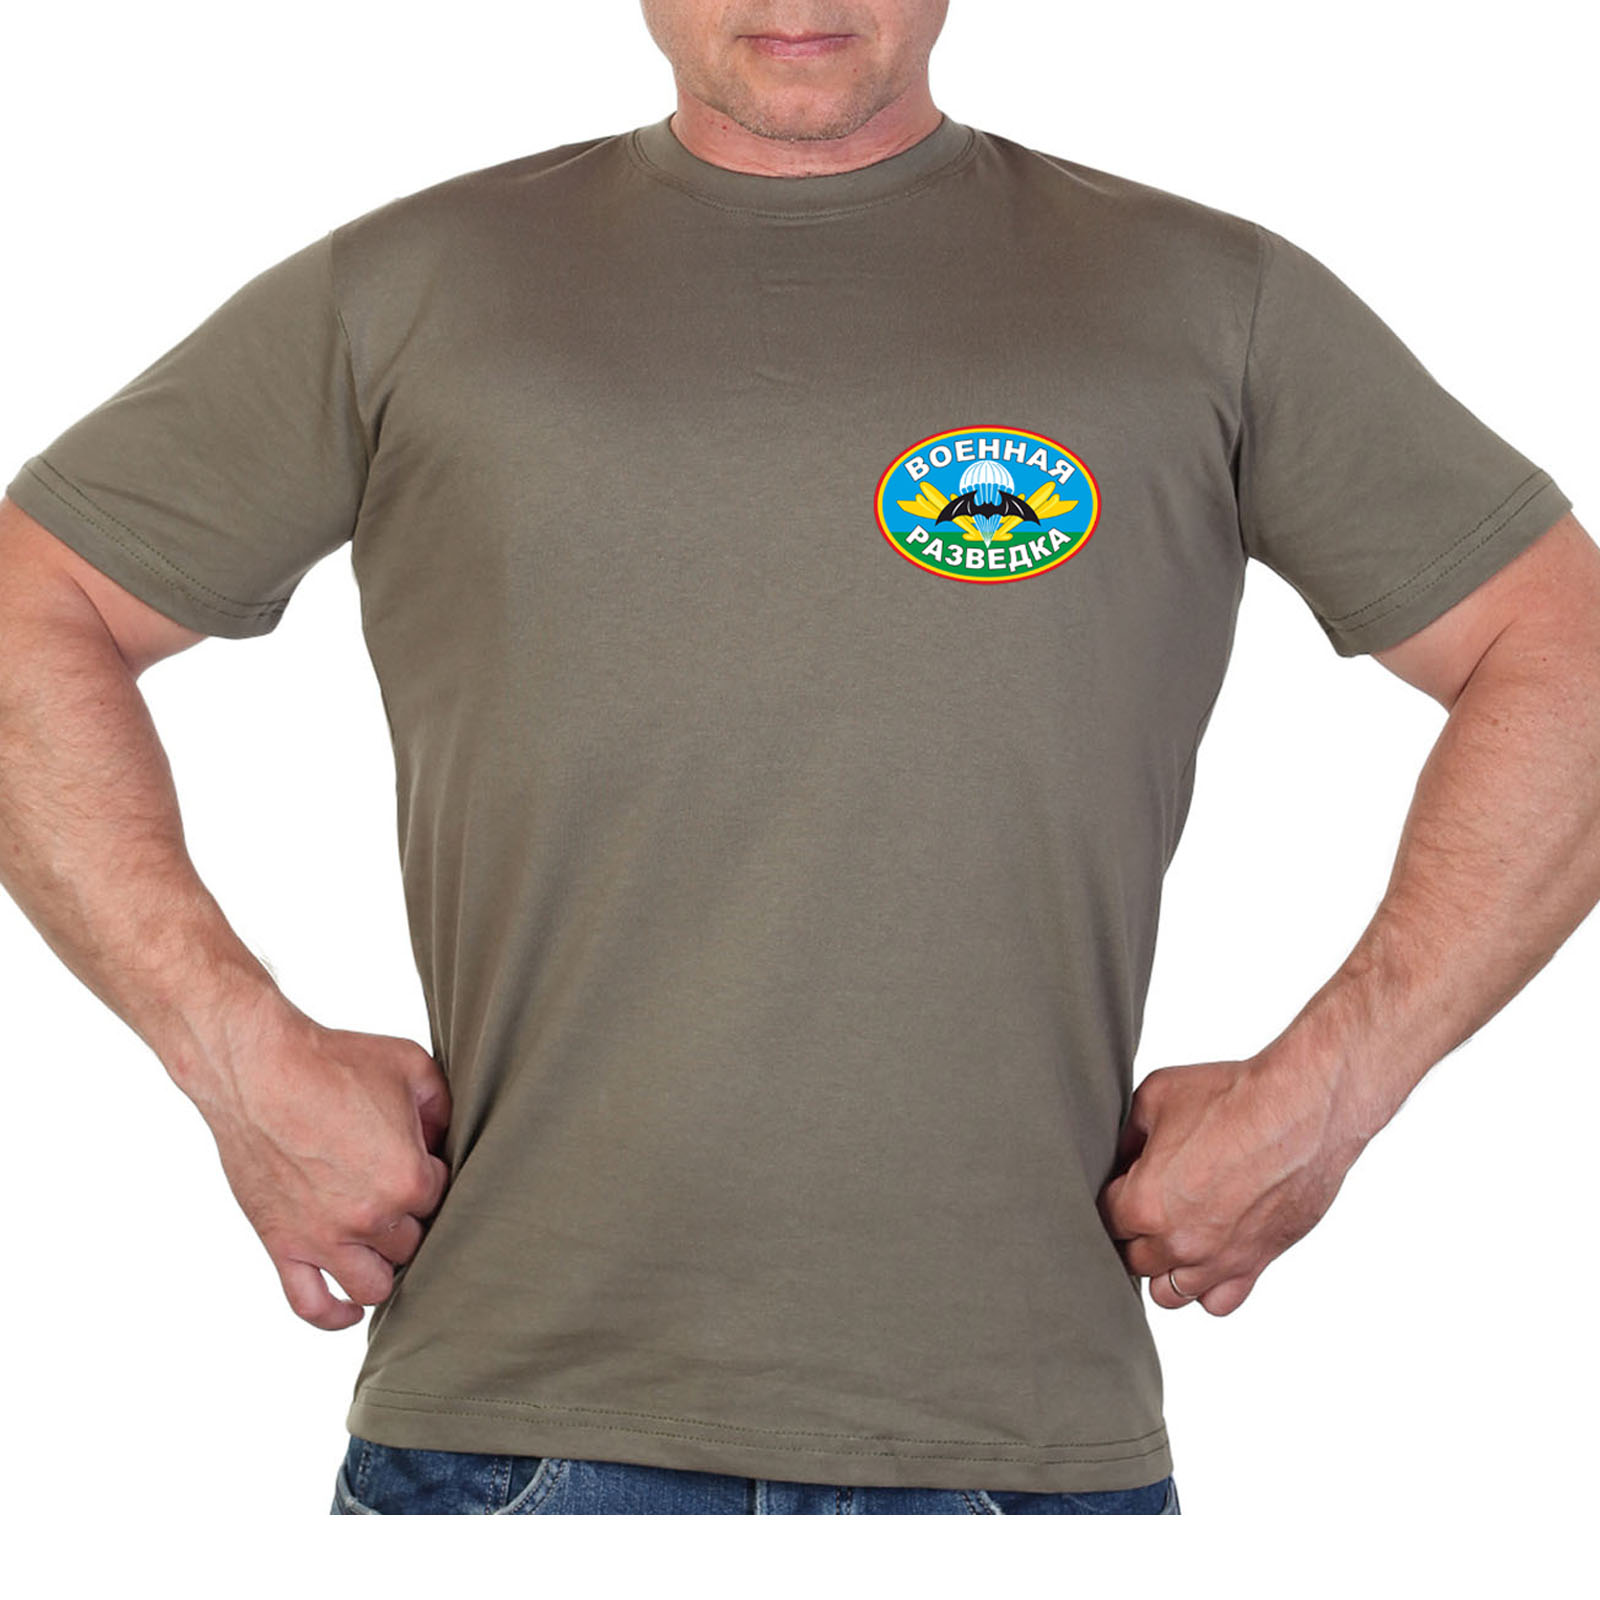 Оливковая футболка с термотрансфером Военной разведки